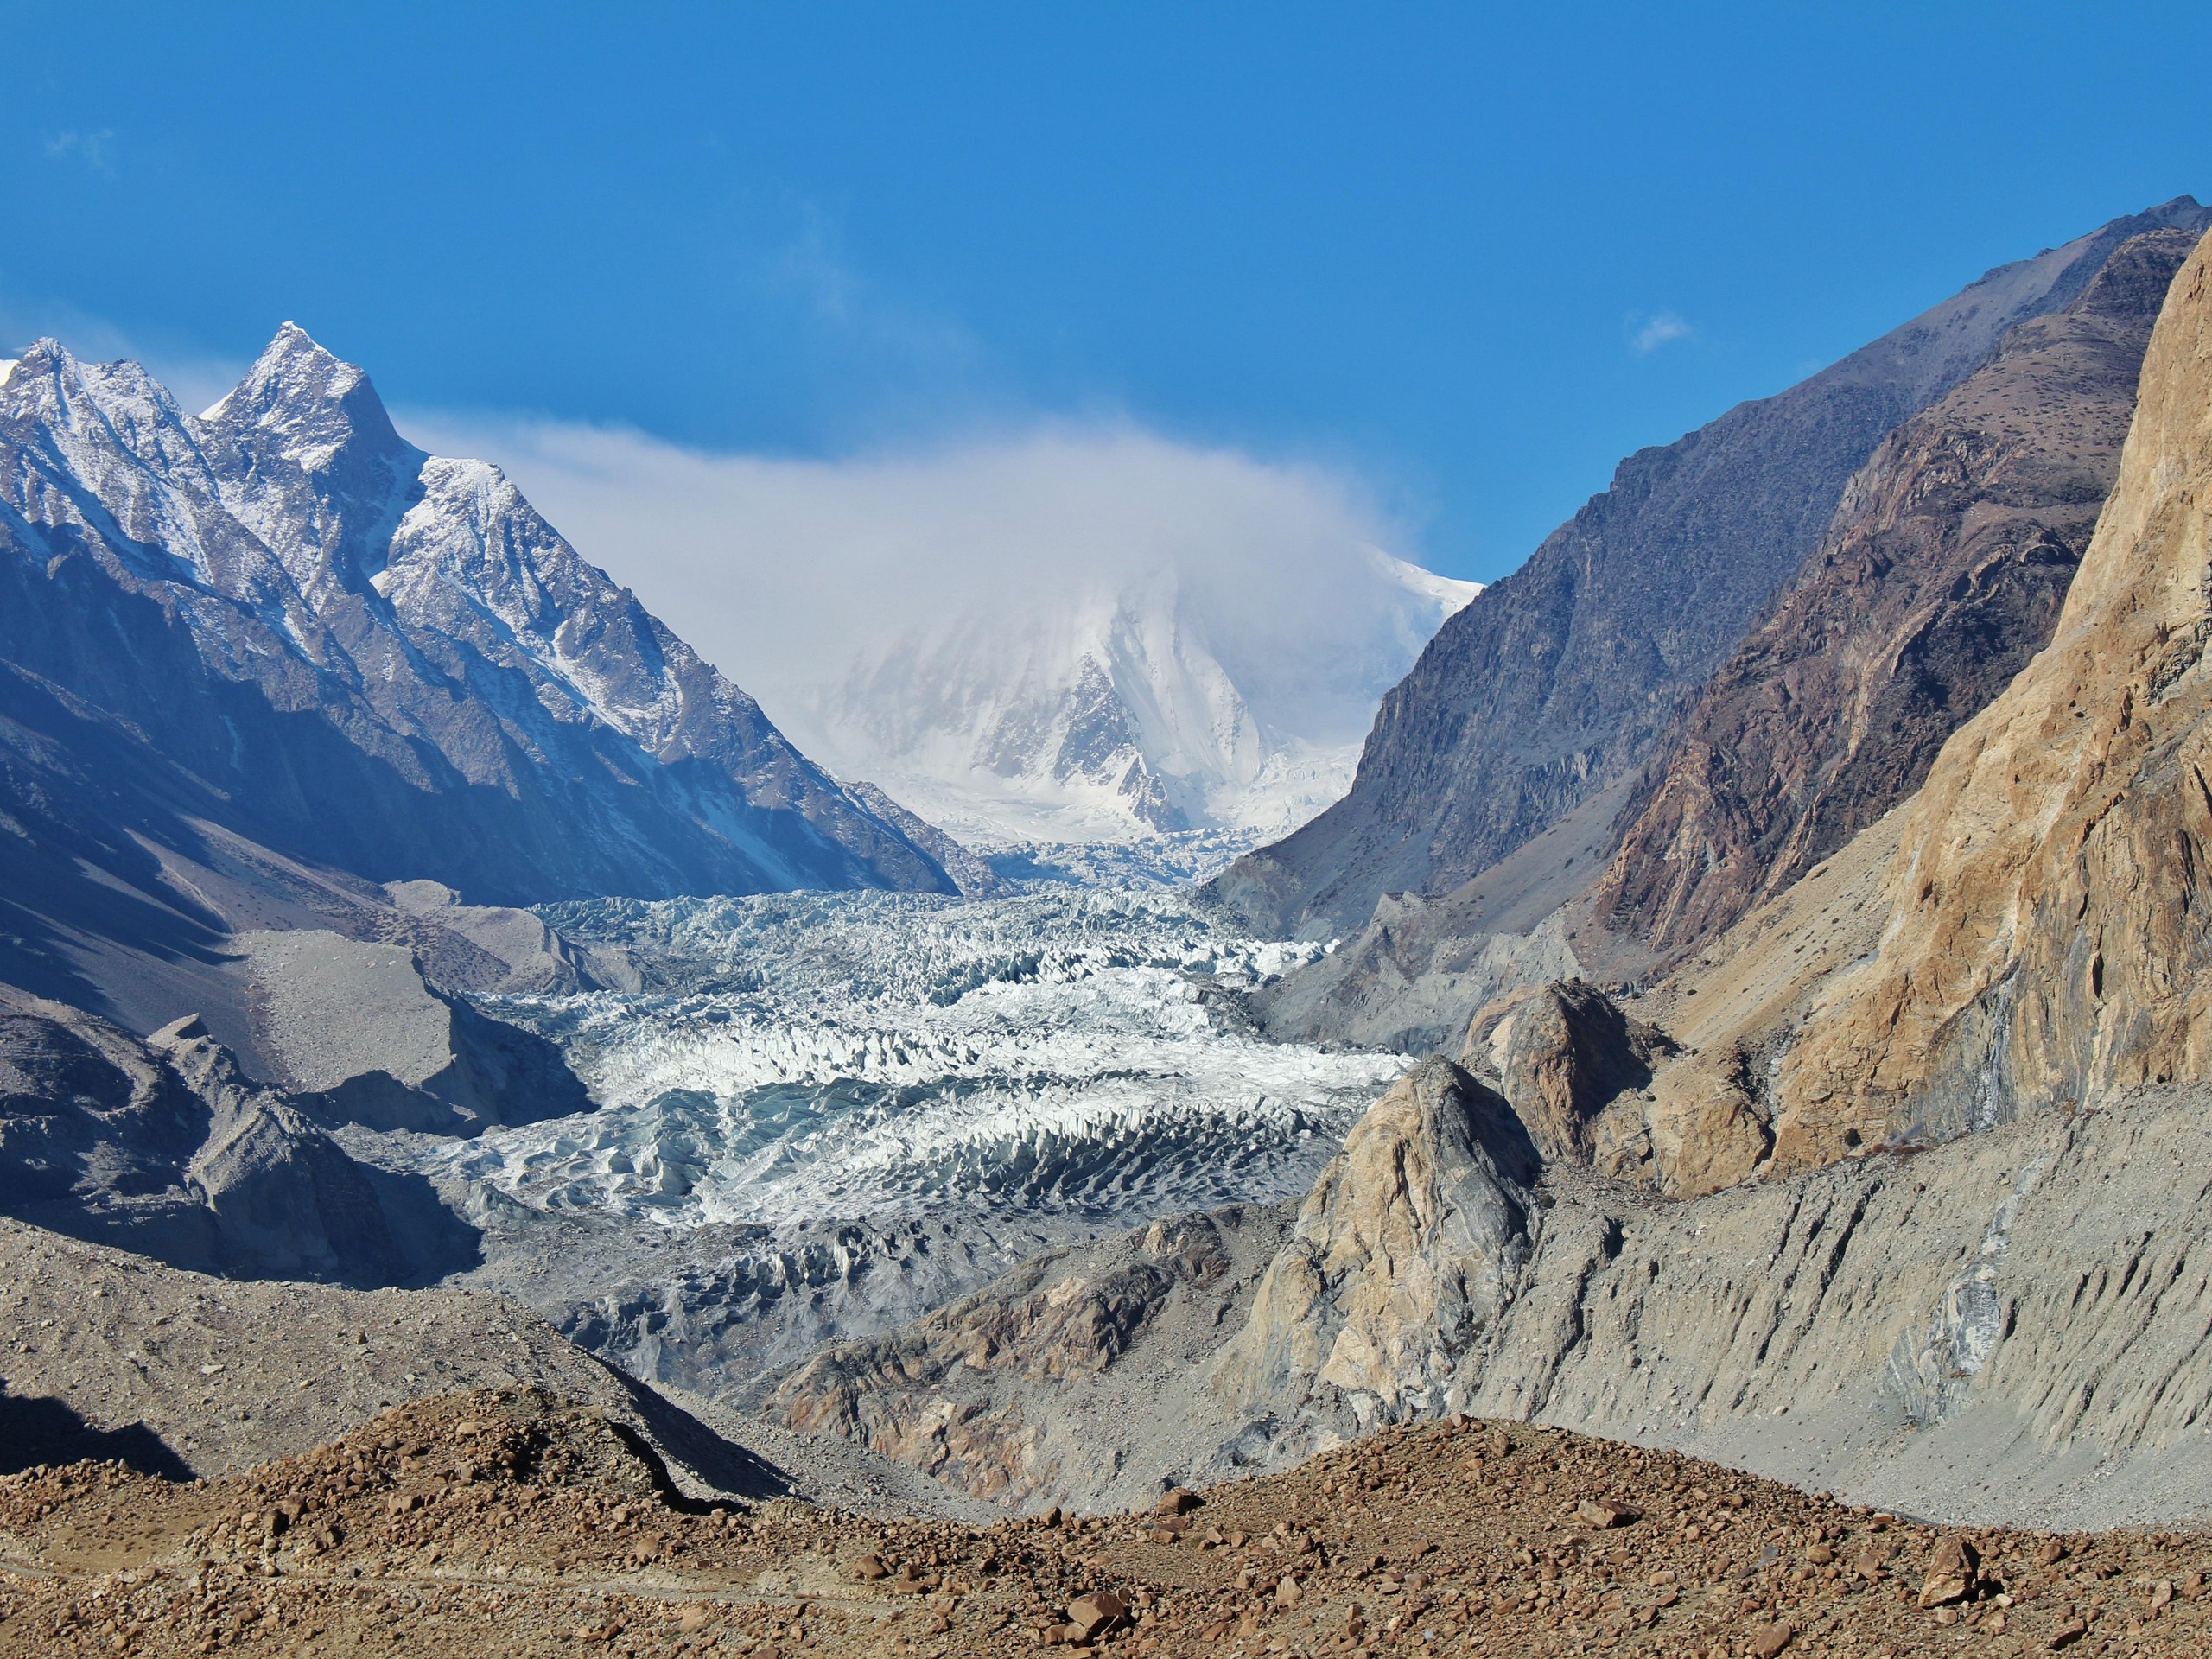 Passu glacier in Pakistan